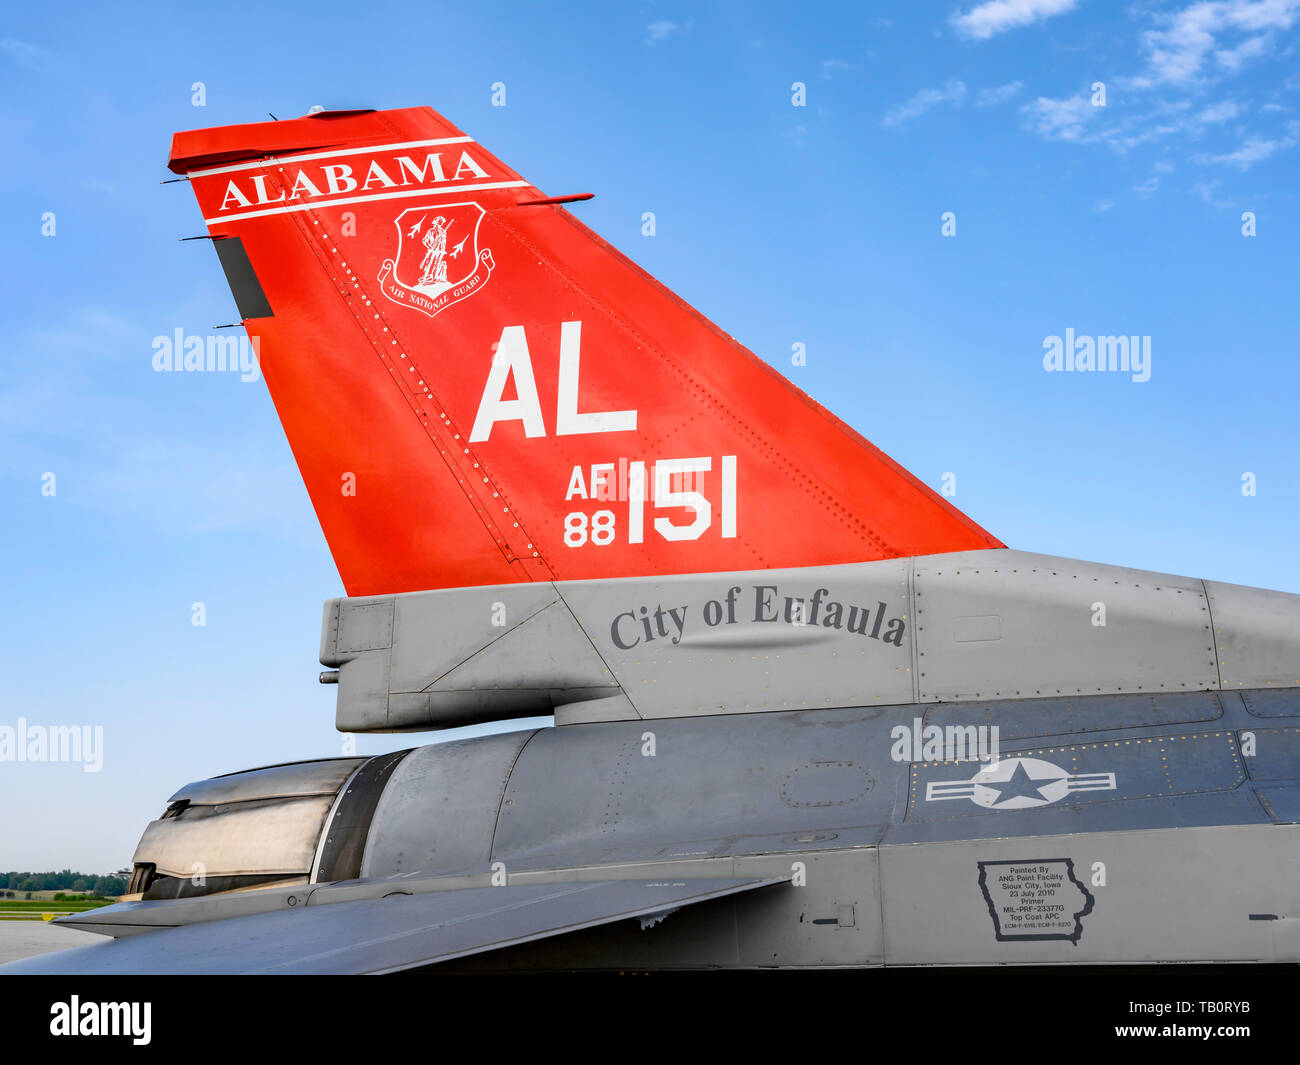 187Th Fighter Wing dell'Alabama Air National Guard, Tuskegee aviatori, rosso squadrone di coda e loro McDonald Douglas F-16 Fighting Falcon jet da combattimento. Foto Stock